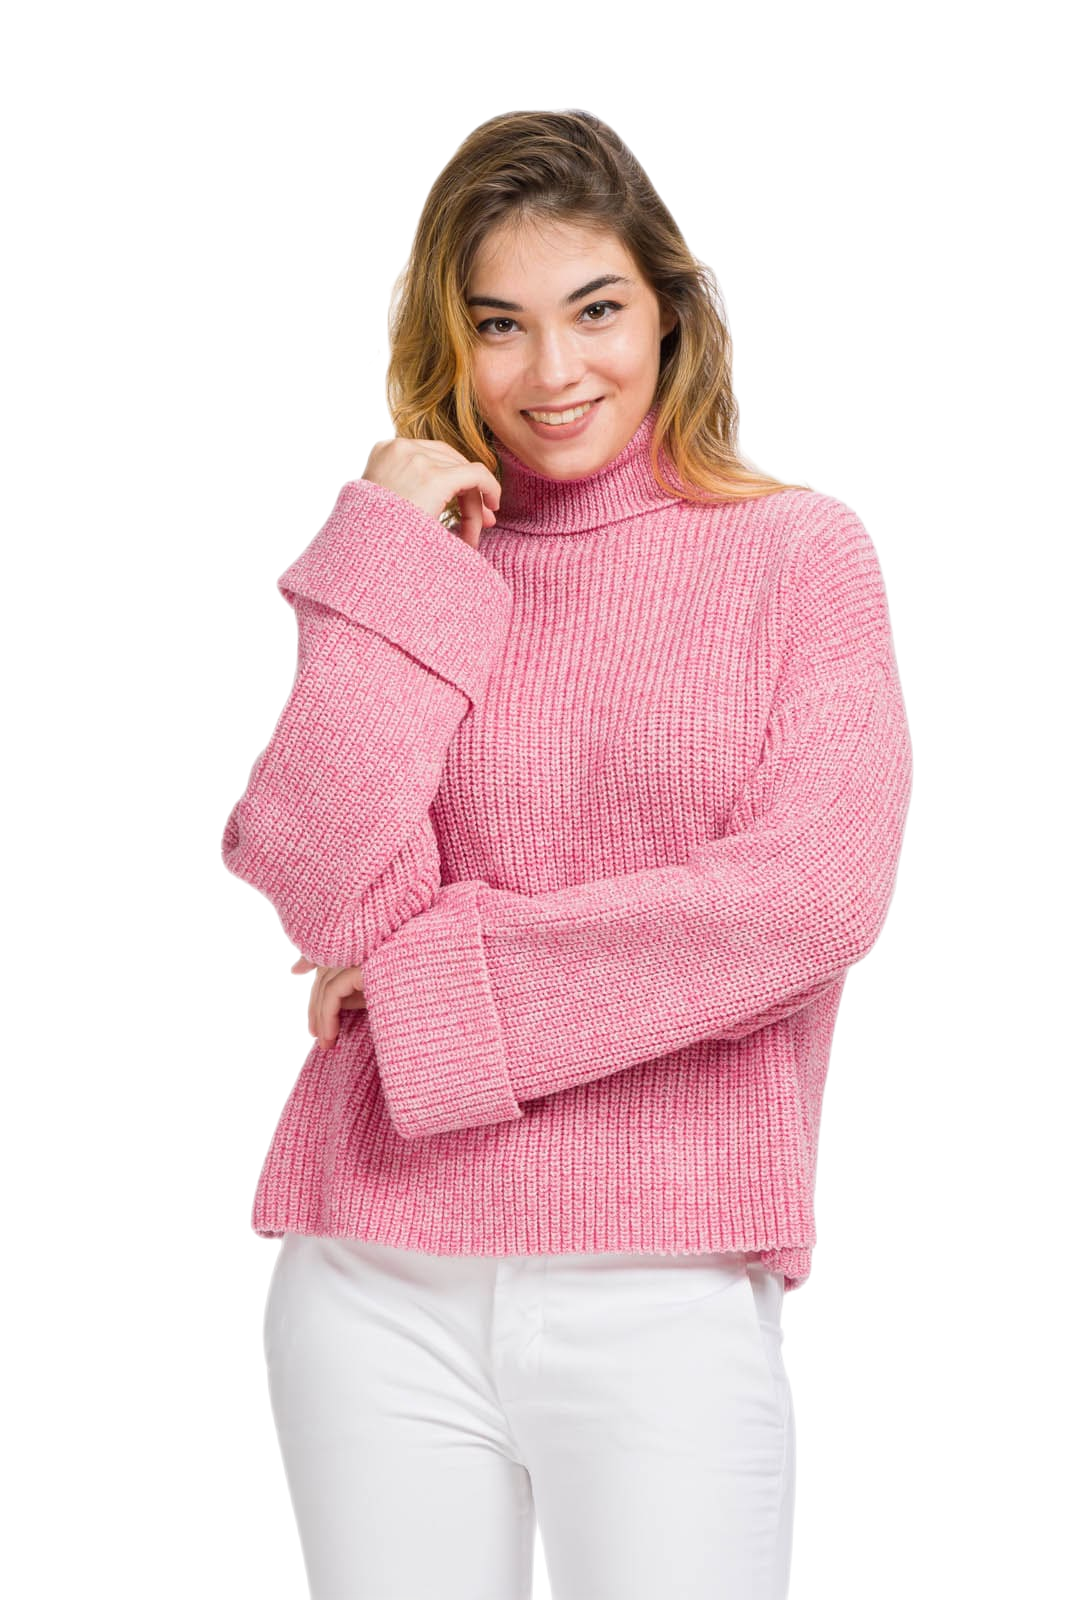 Maglione donna a collo alto rosa